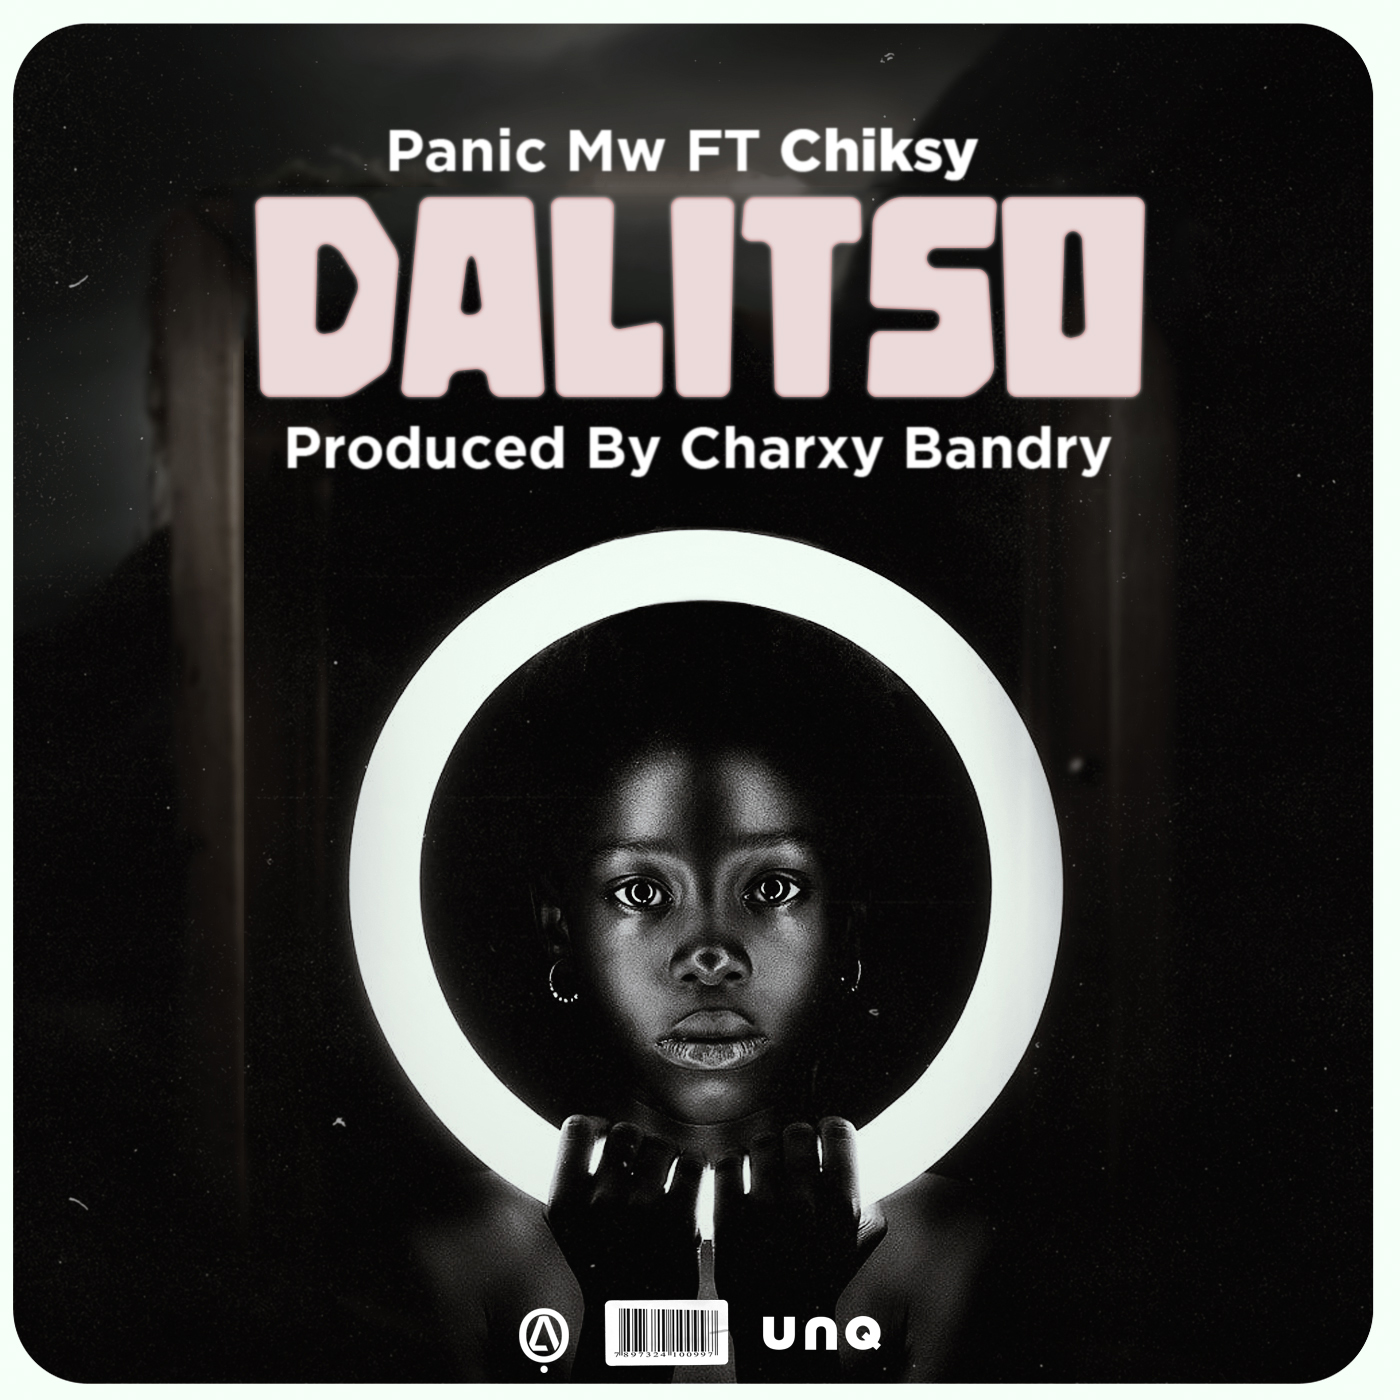 Panic-mw-Dalitso_ft_Chiksy_Prod_Charxy-Bandry__Faksy808